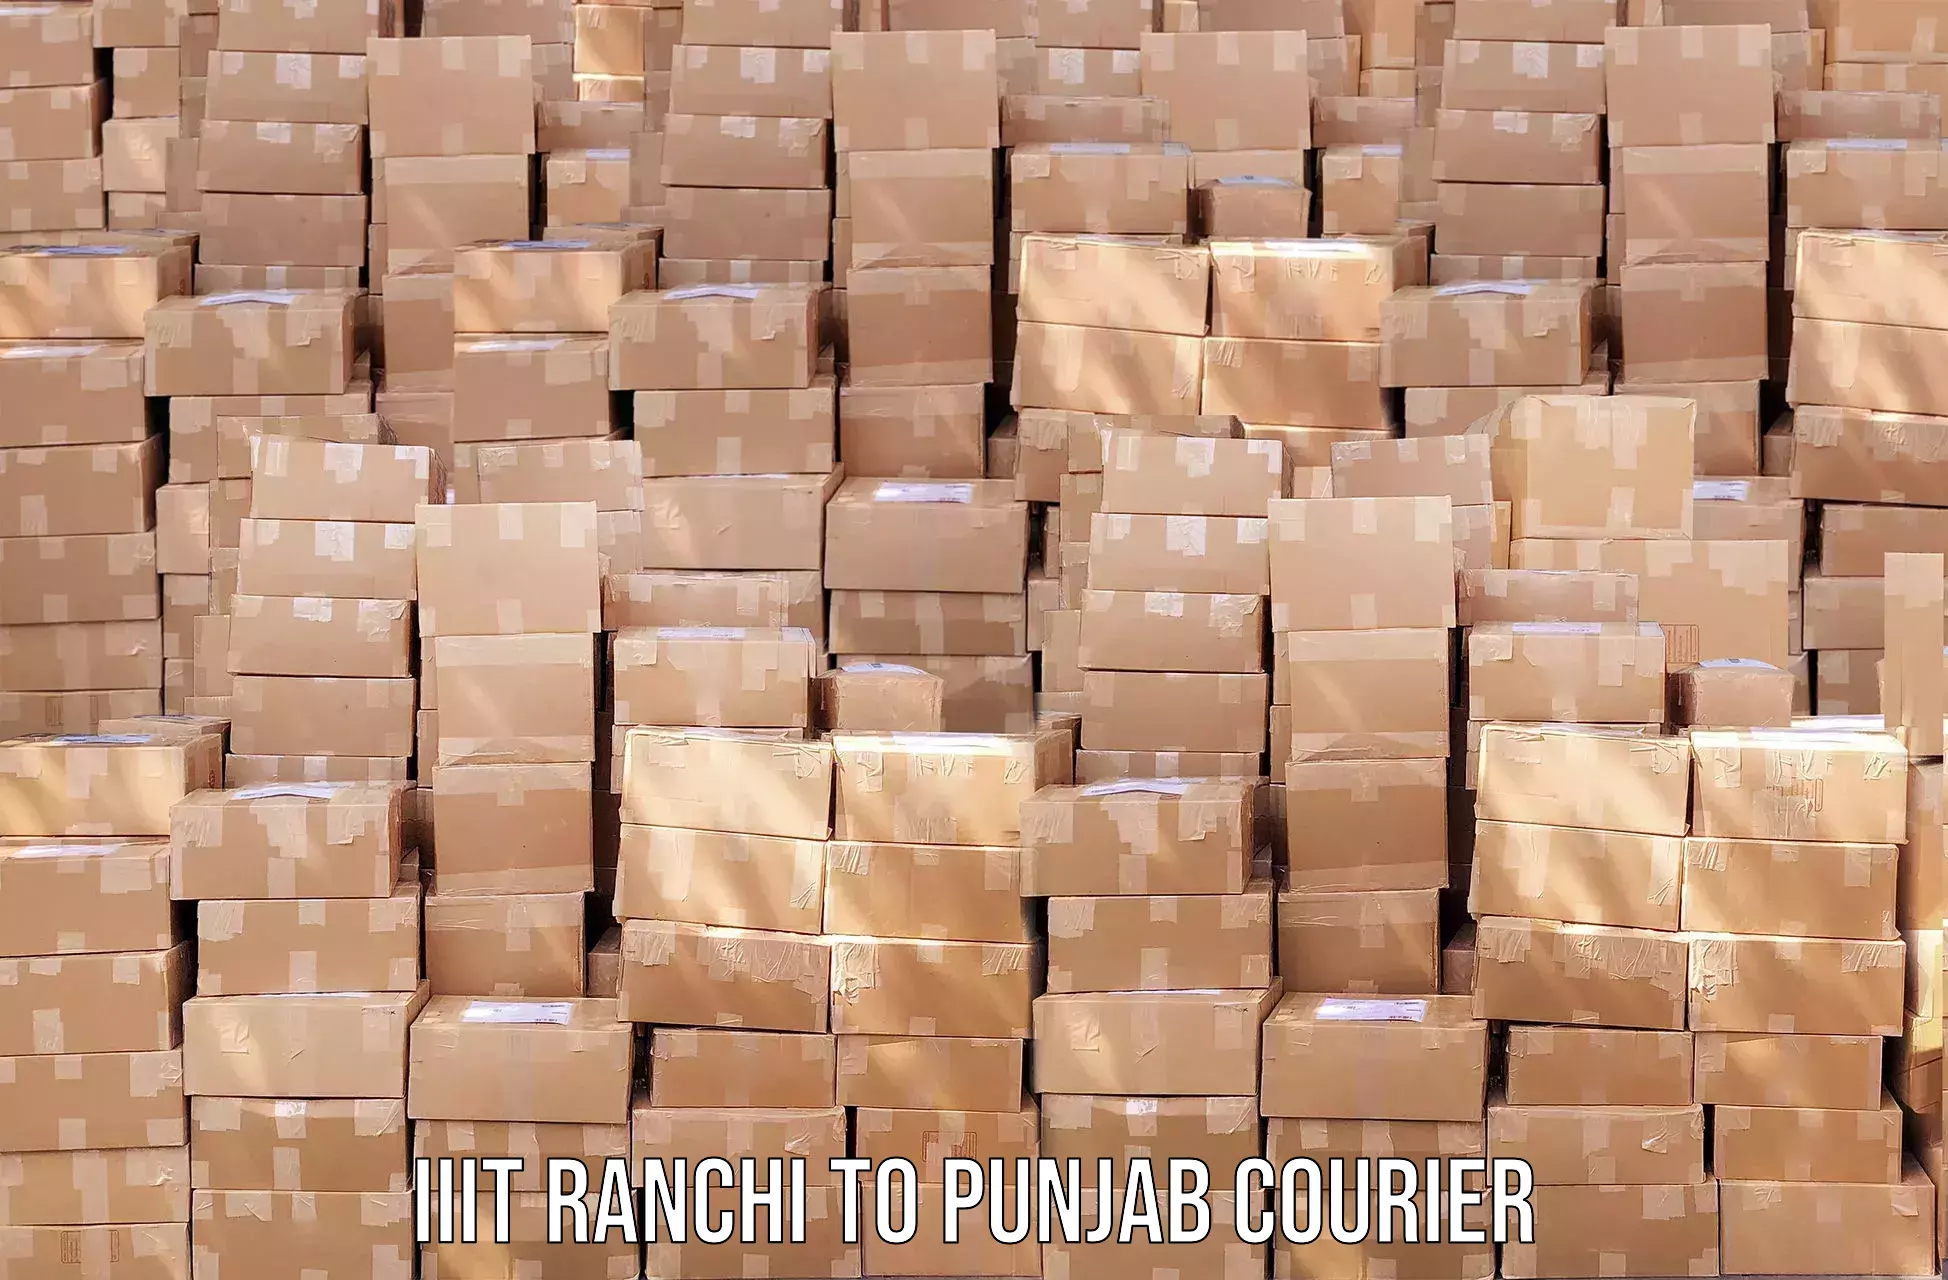 Streamlined logistics management IIIT Ranchi to Punjab